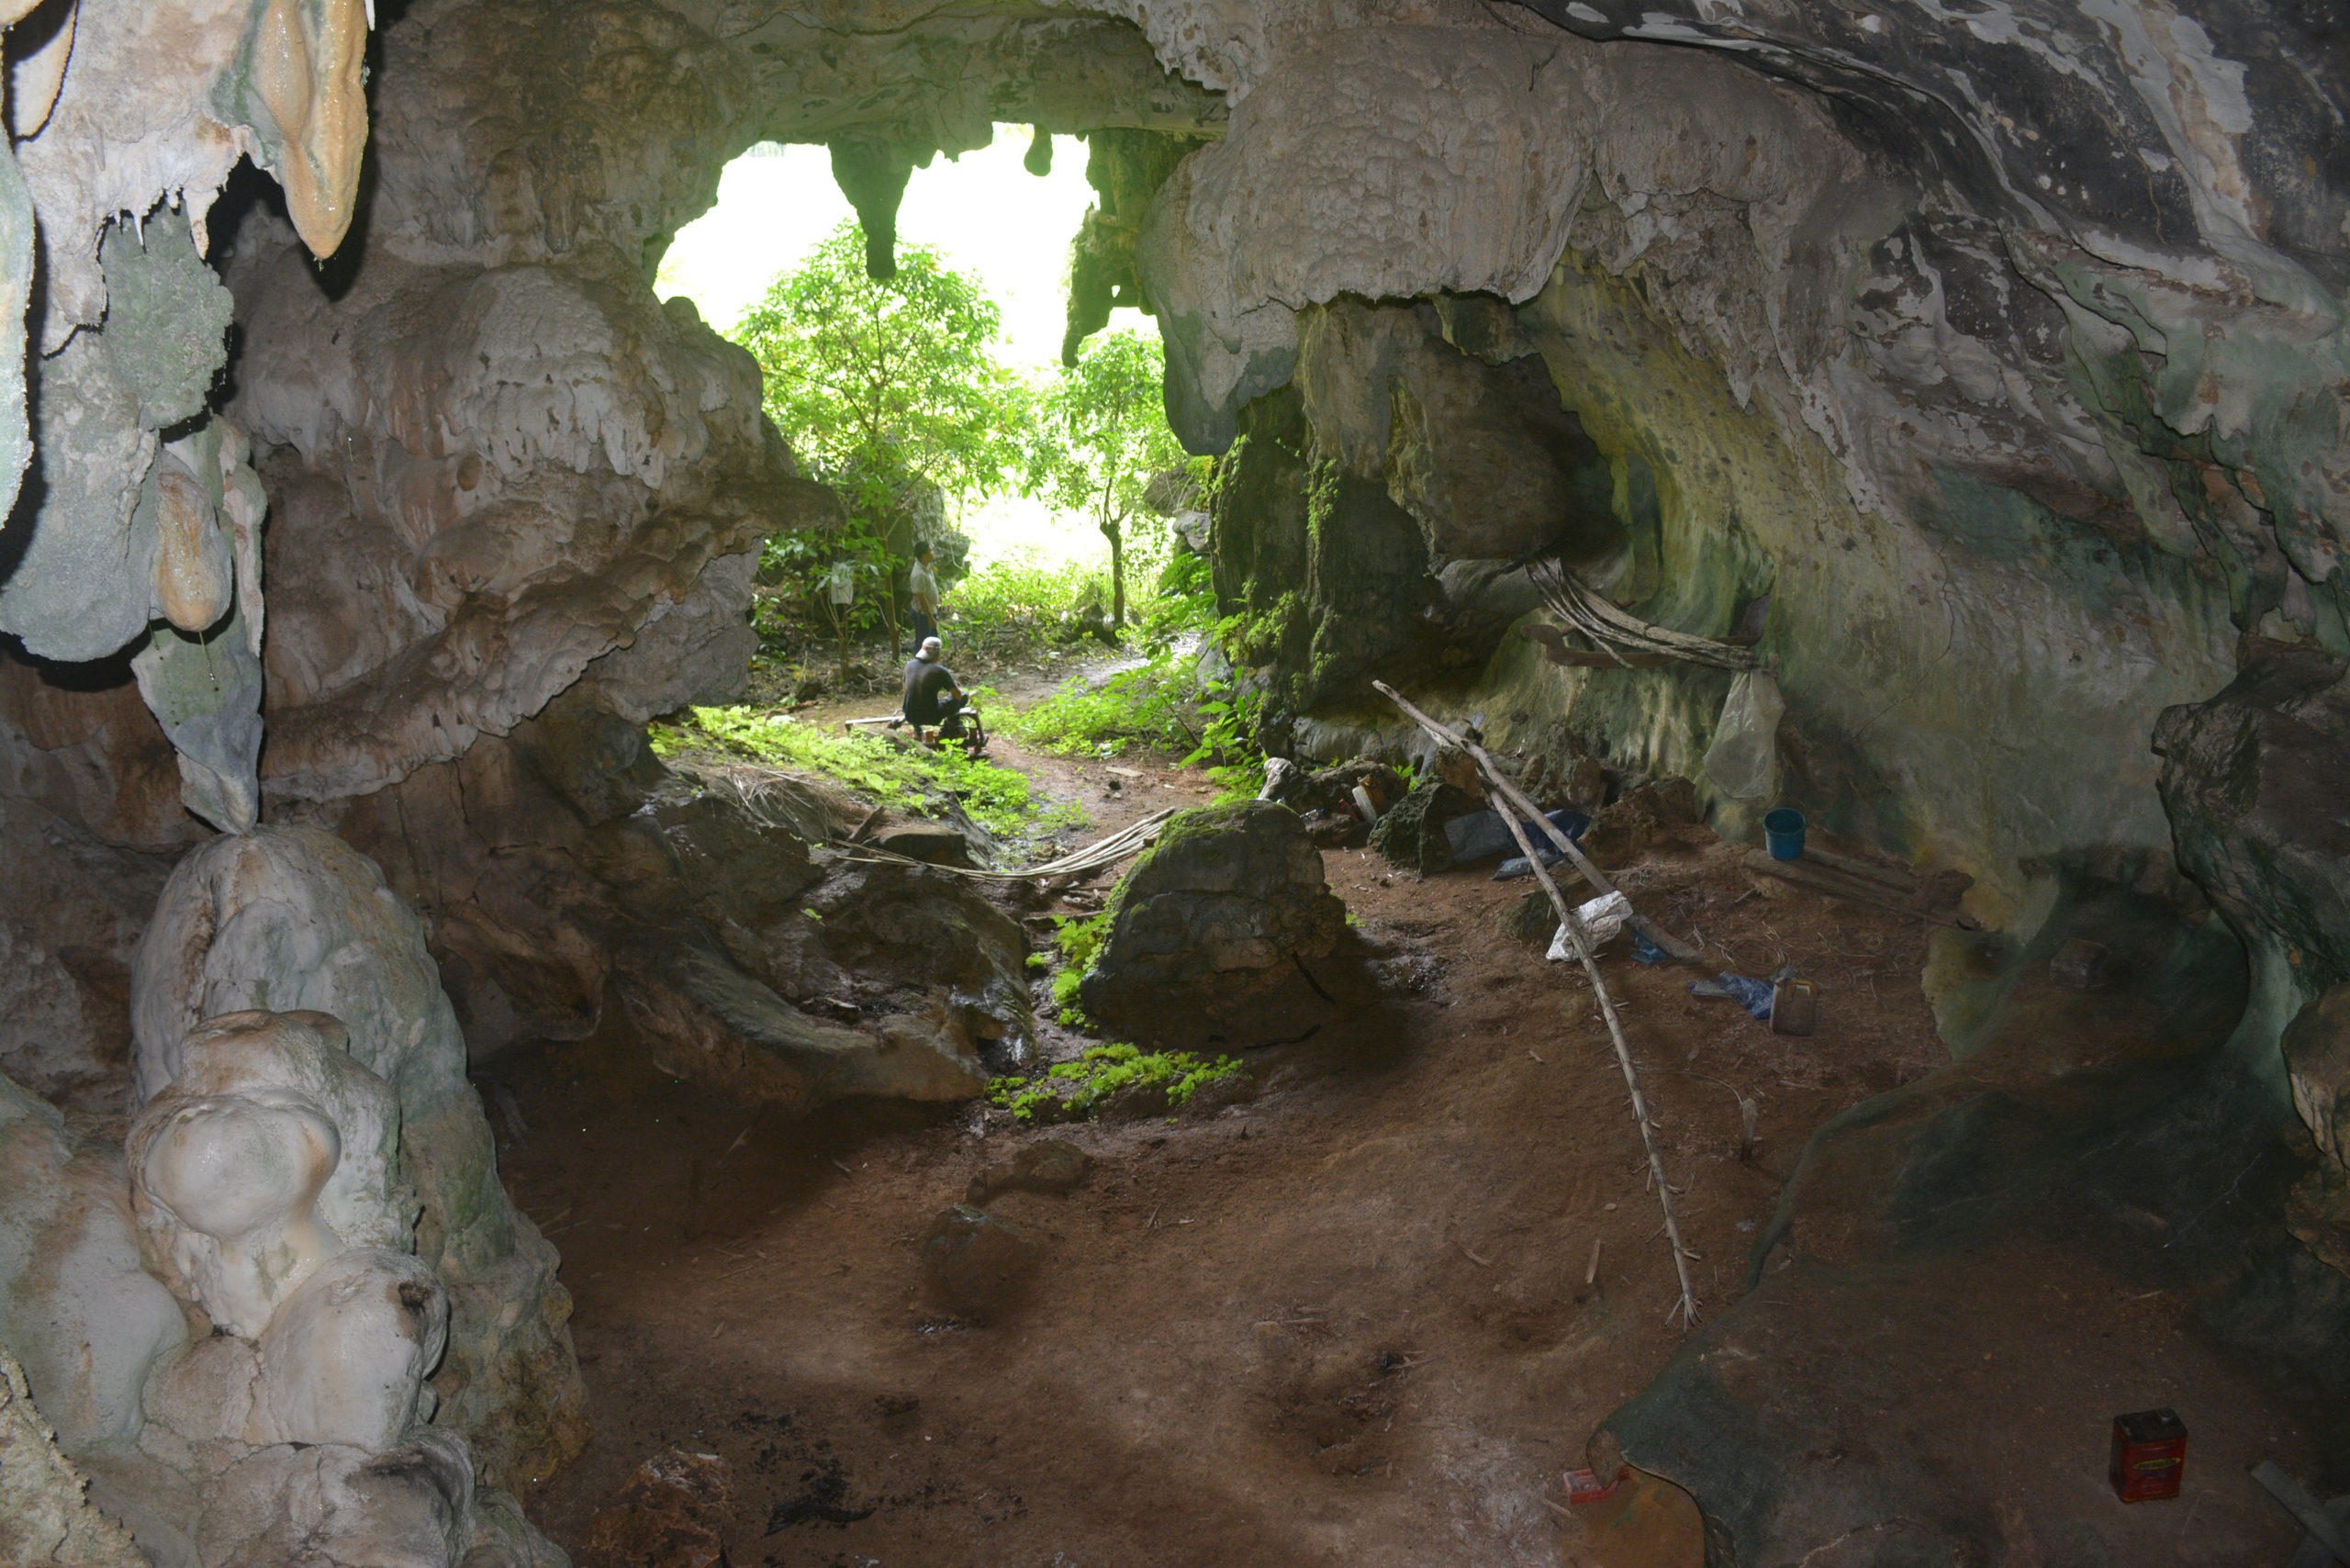 The entrance to Leang Tedongnge cave. (Image: AA Oktaviana)